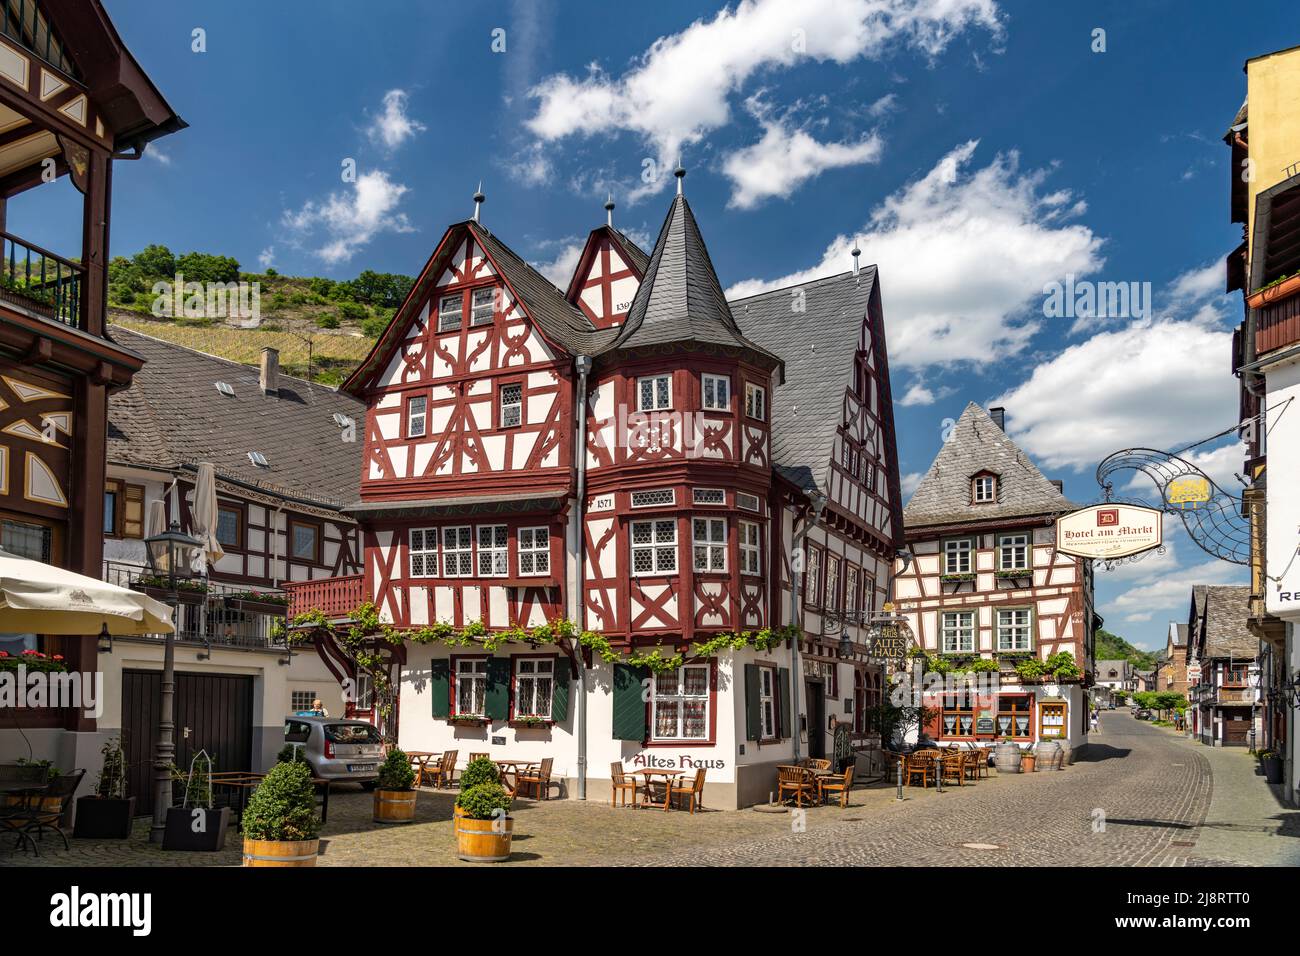 Fachwerk in der Altstadt von Bacharach, Welterbe Oberes Mittelrheintal, Rheinland-Pfalz, Deutschland   |  timber-frame houses in the old town of  Bach Stock Photo